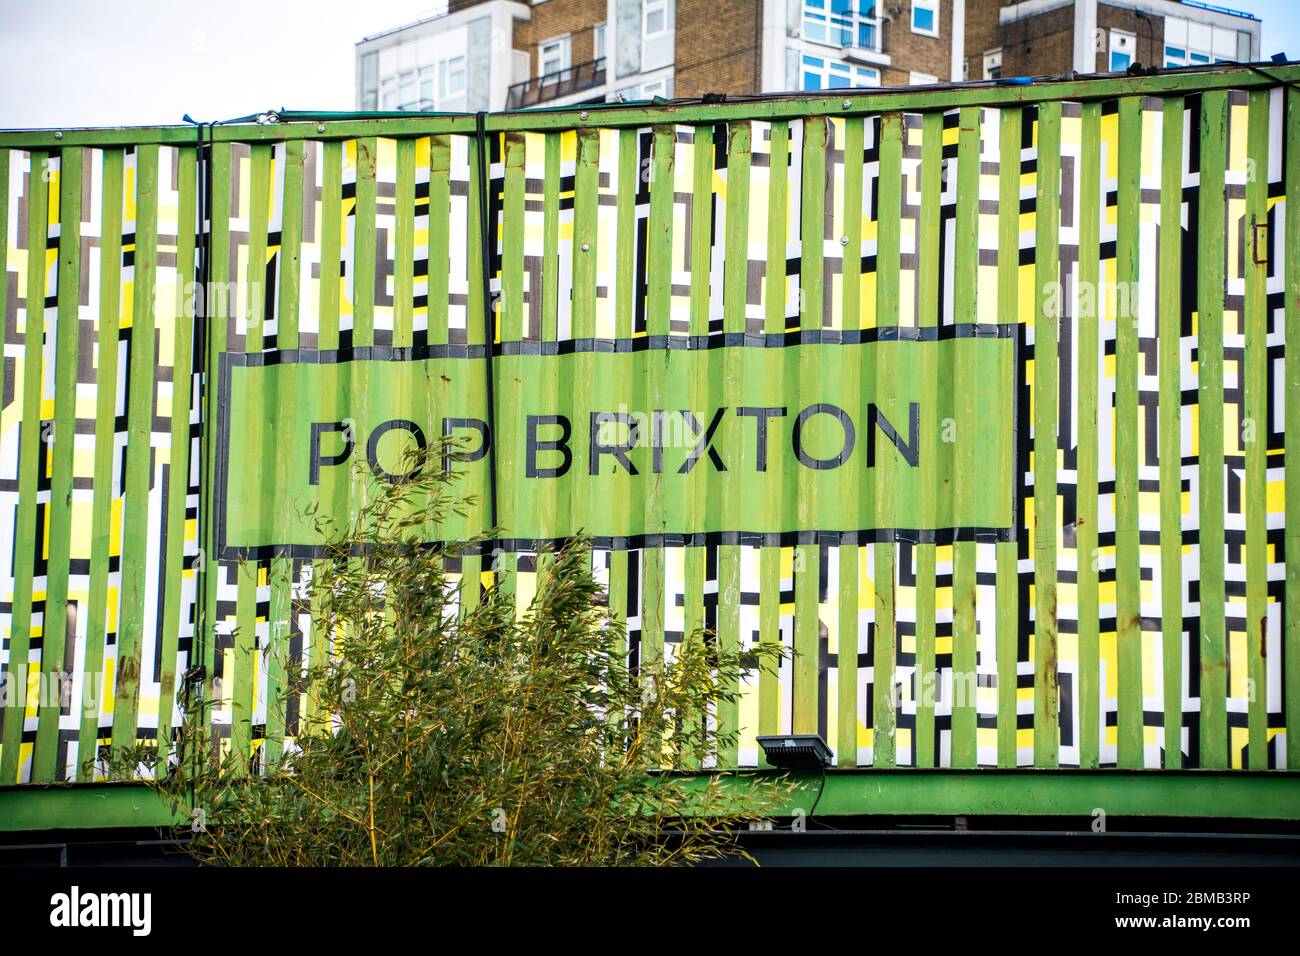 LONDRA-: Pop Brixton- un posto di Street food, bar e vita notturna fatto da contenitori di spedizione riutilizzati a Brixton, a sud-ovest di Londra. Foto Stock